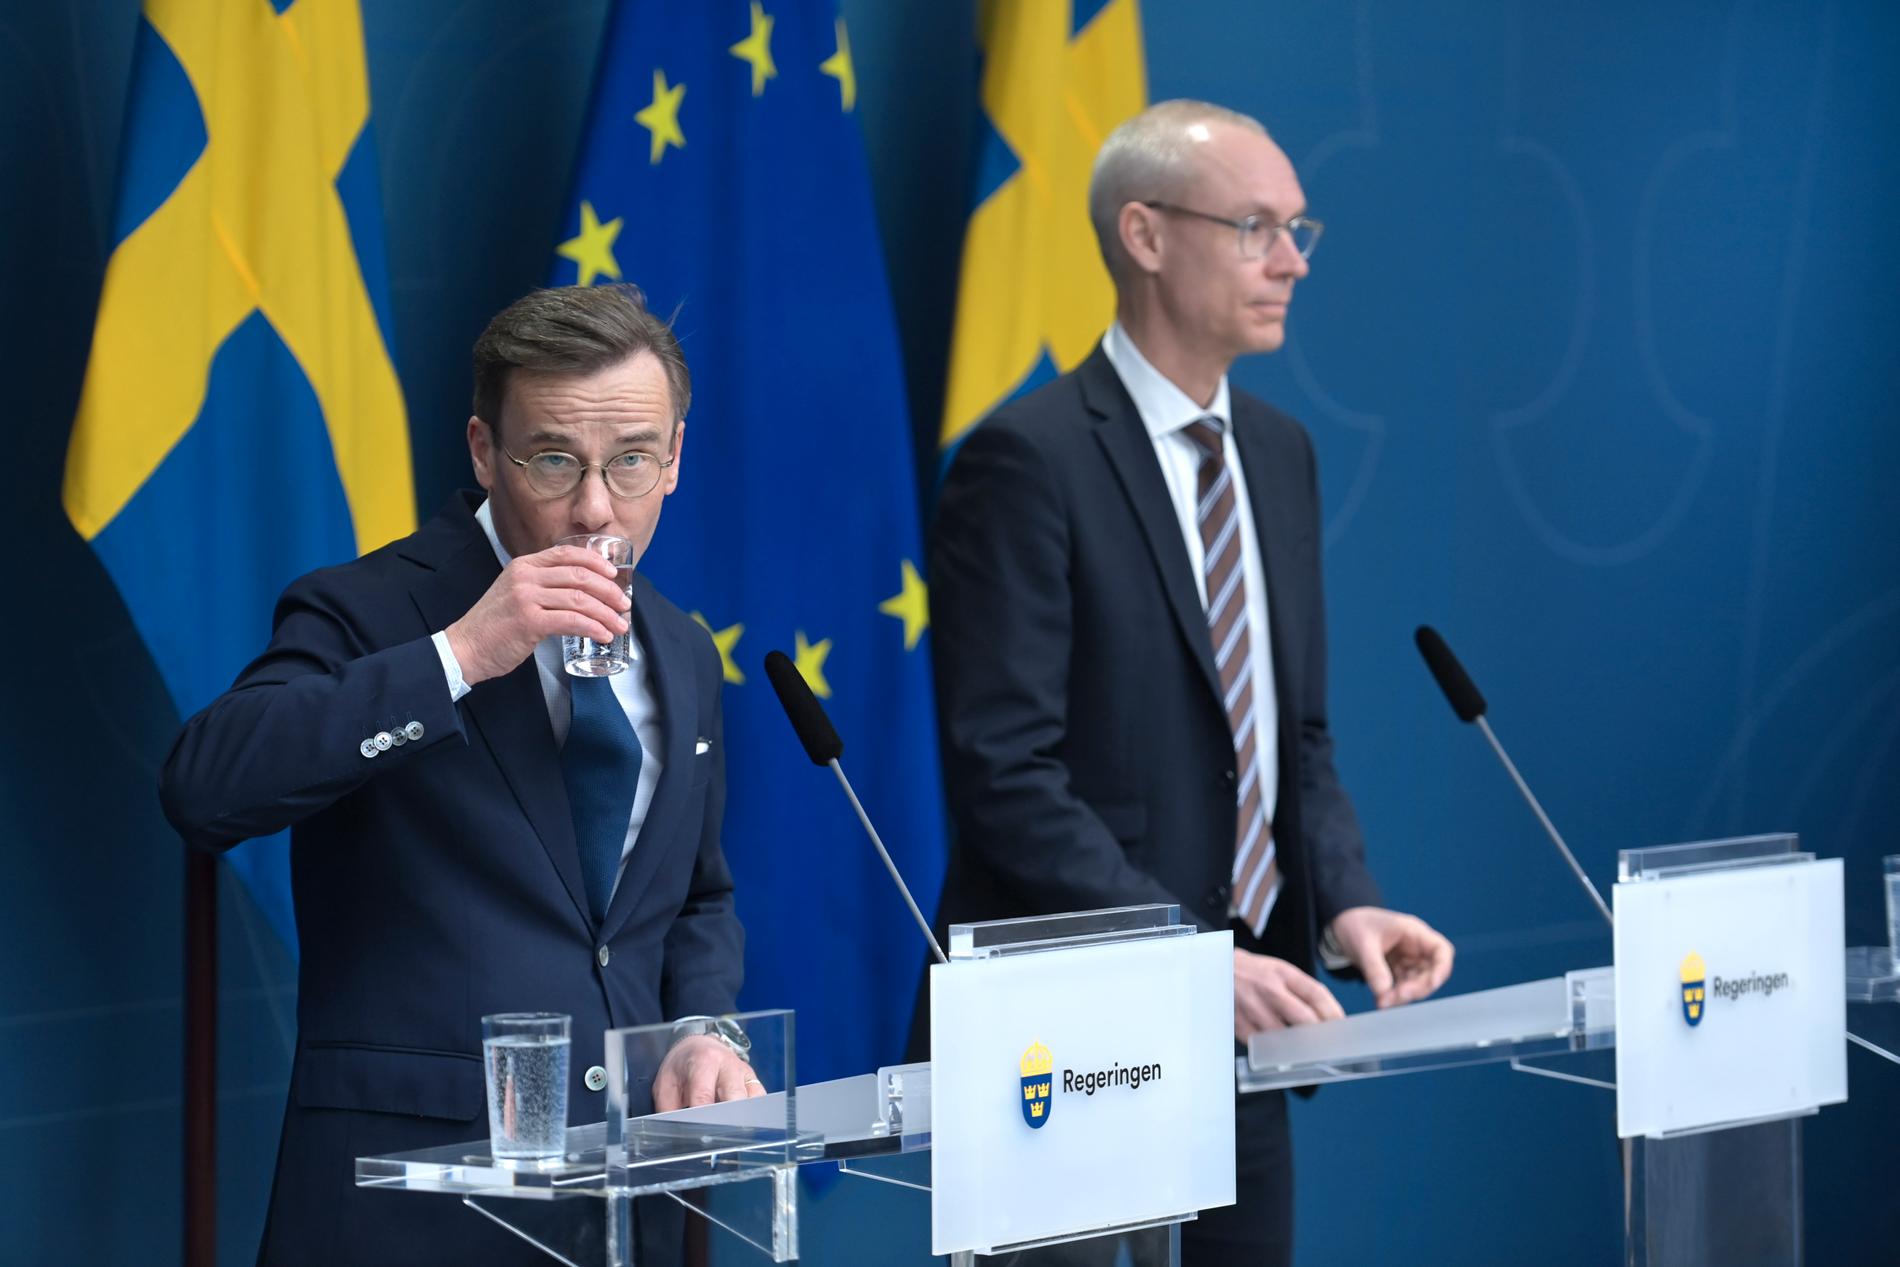 Statsminister Ulf Kristersson och Oscar Stenström, ambassadör i Statsrådsberedningen och chefsförhandlare i Natoprocessen, under pressträffen.